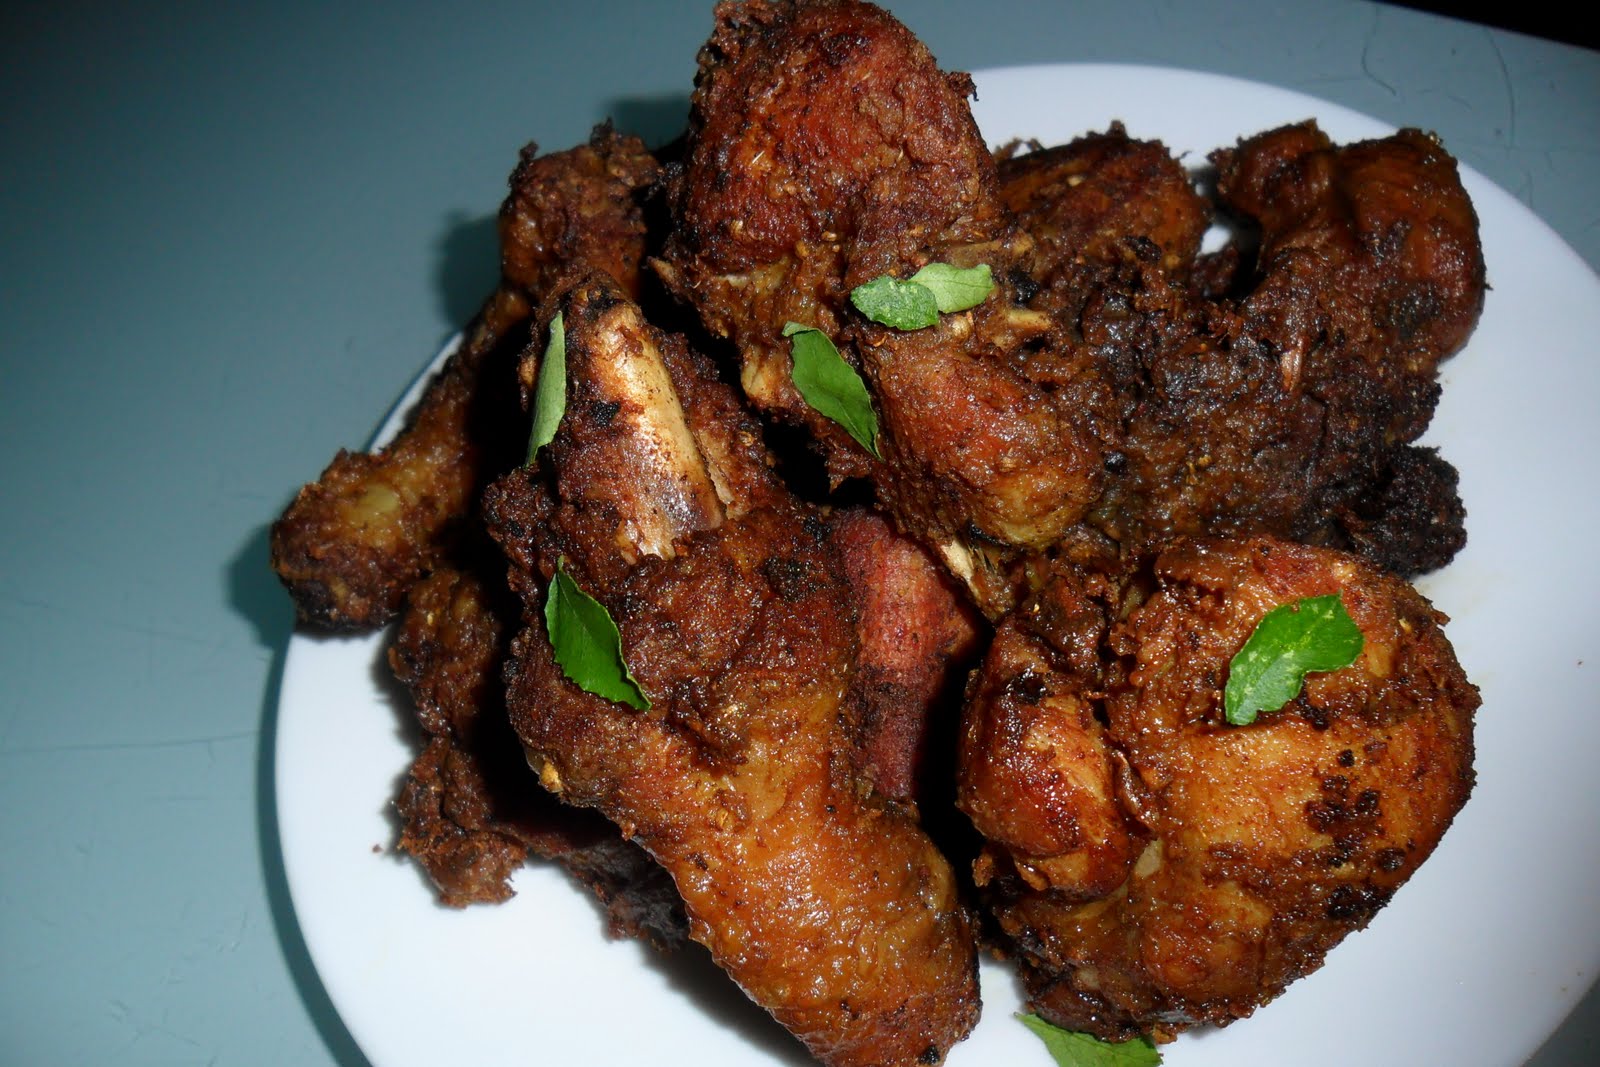 Deli sweetsour: Ayam goreng berempah